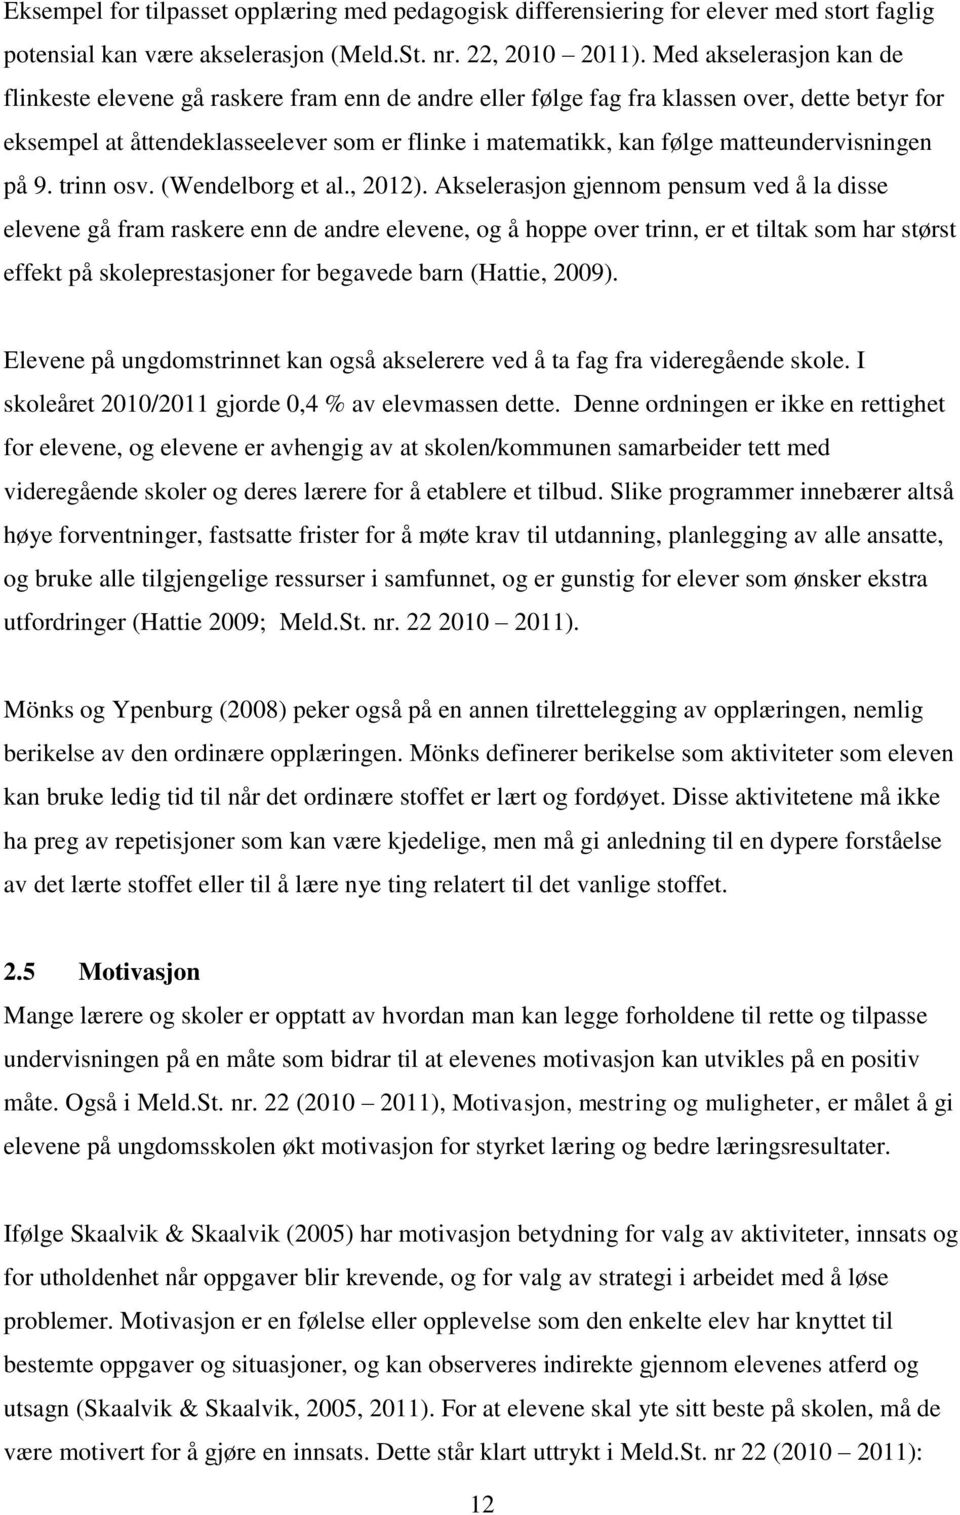 matteundervisningen på 9. trinn osv. (Wendelborg et al., 2012).